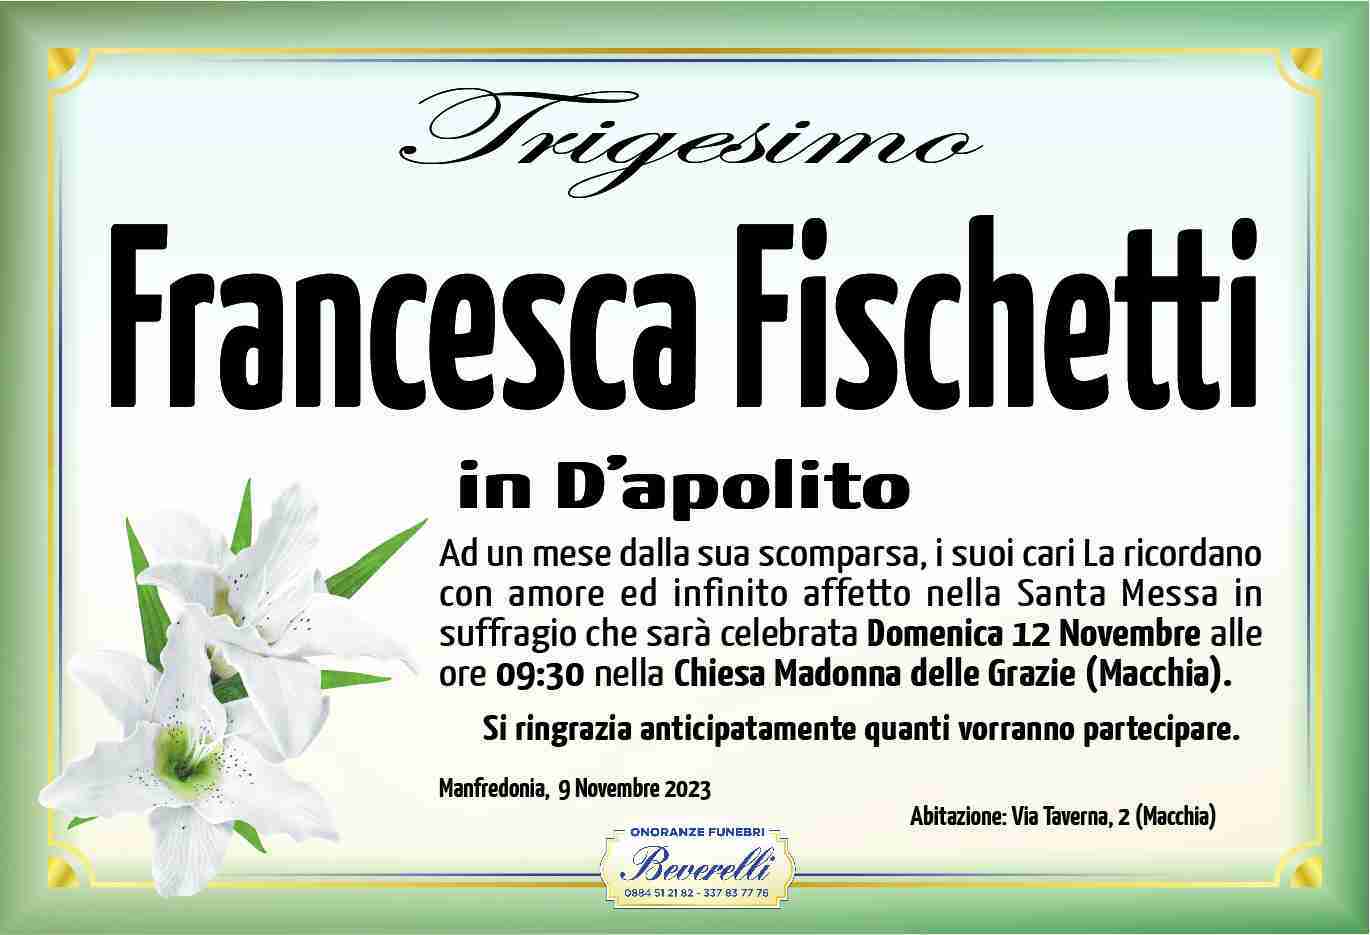 Francesca Fischetti